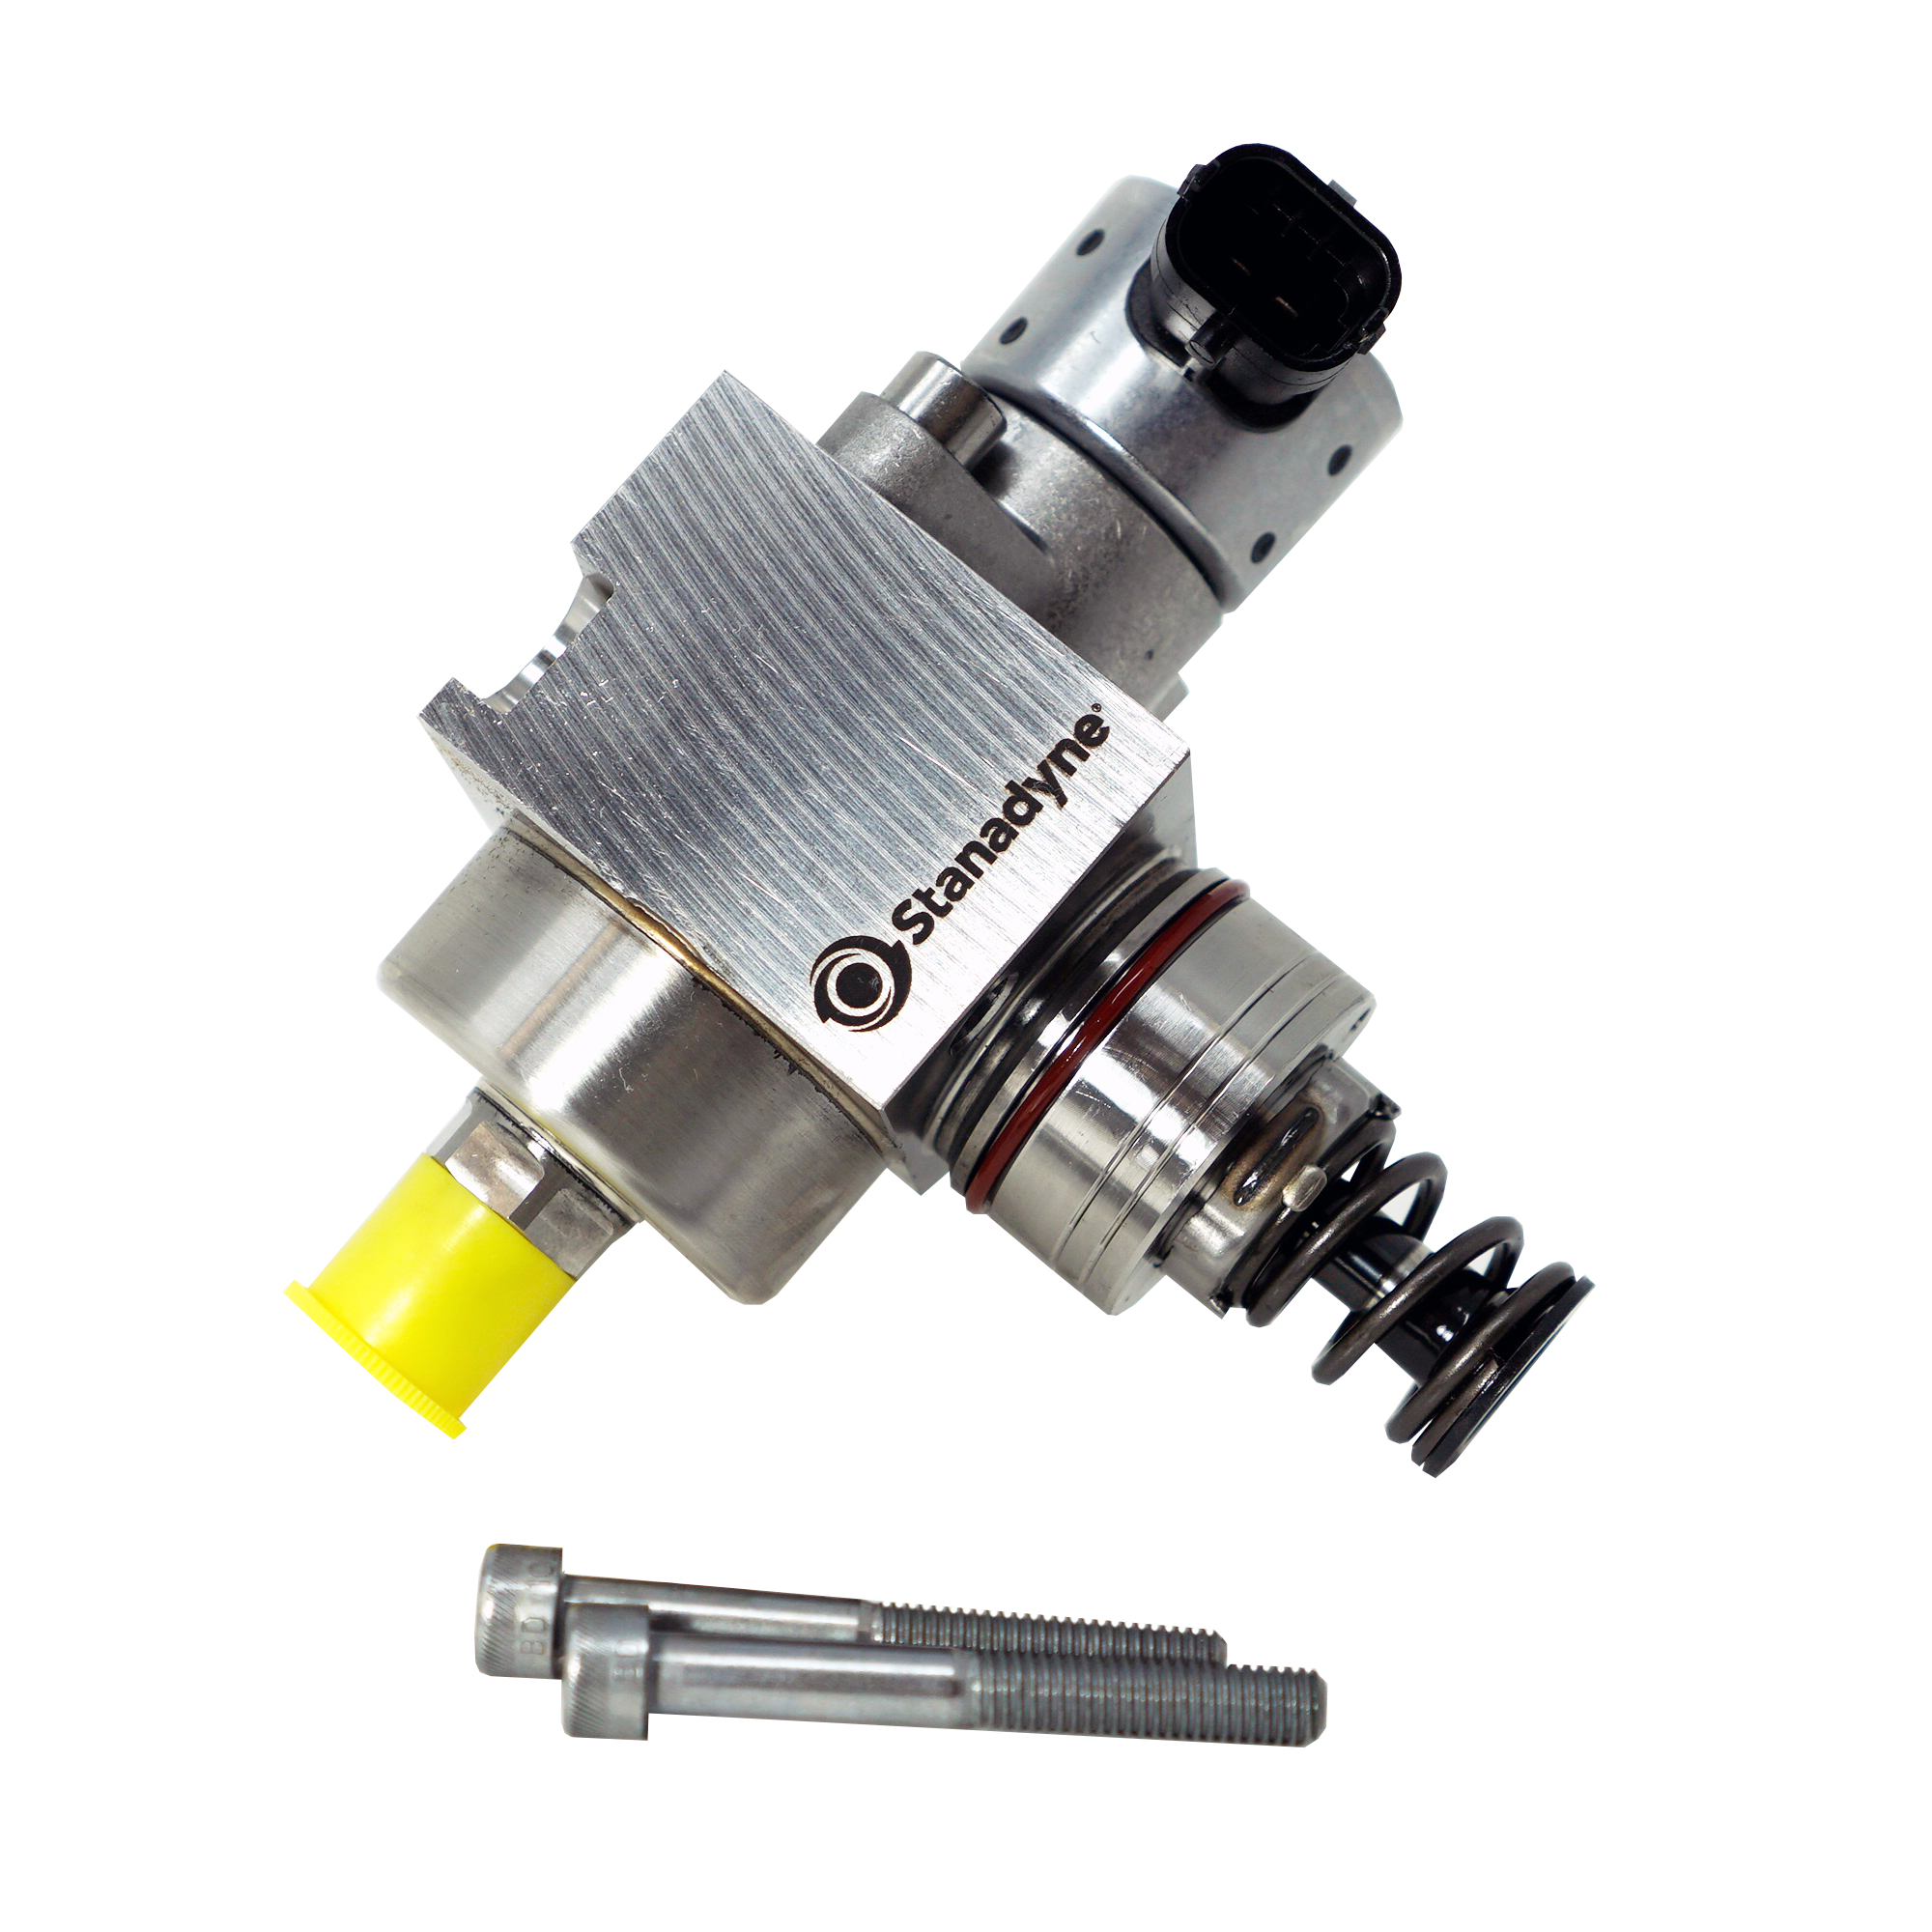 Lingenfelter Nostrum GM LT4 1150-250 High Pressure Fuel Pump